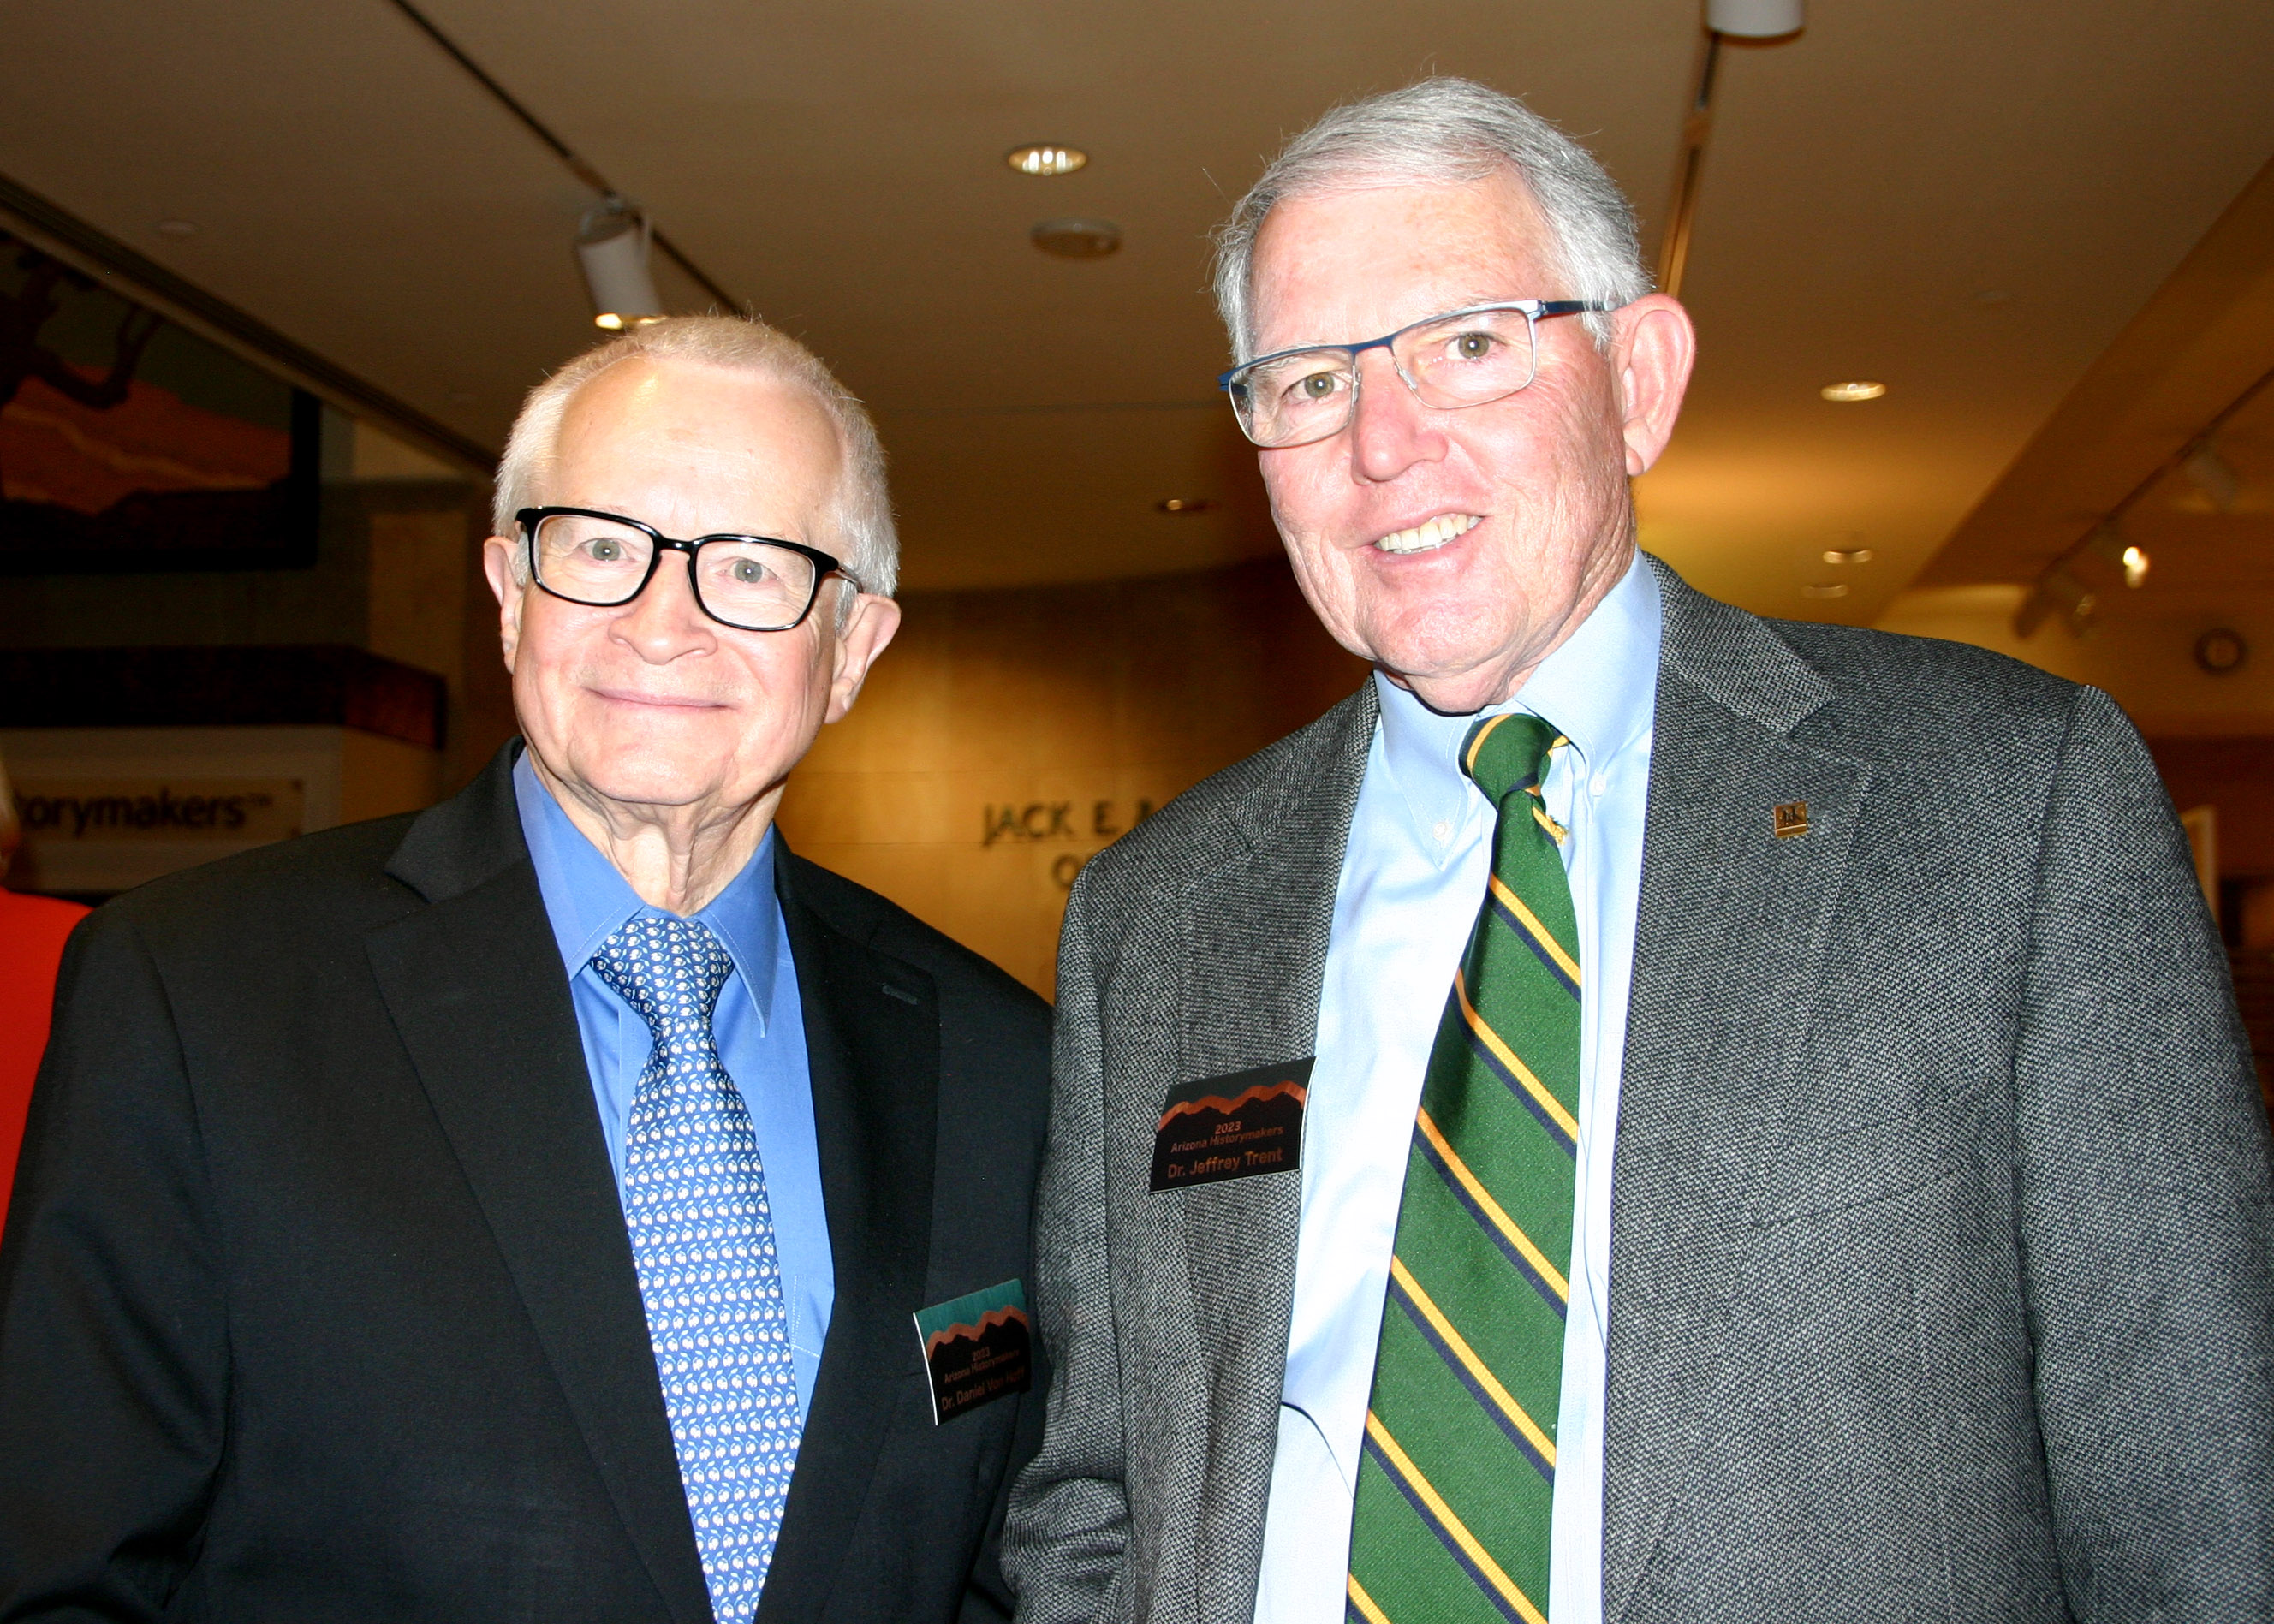 Historymakers Dr. Daniel Von Hoff & Dr. Jeffrey Trent